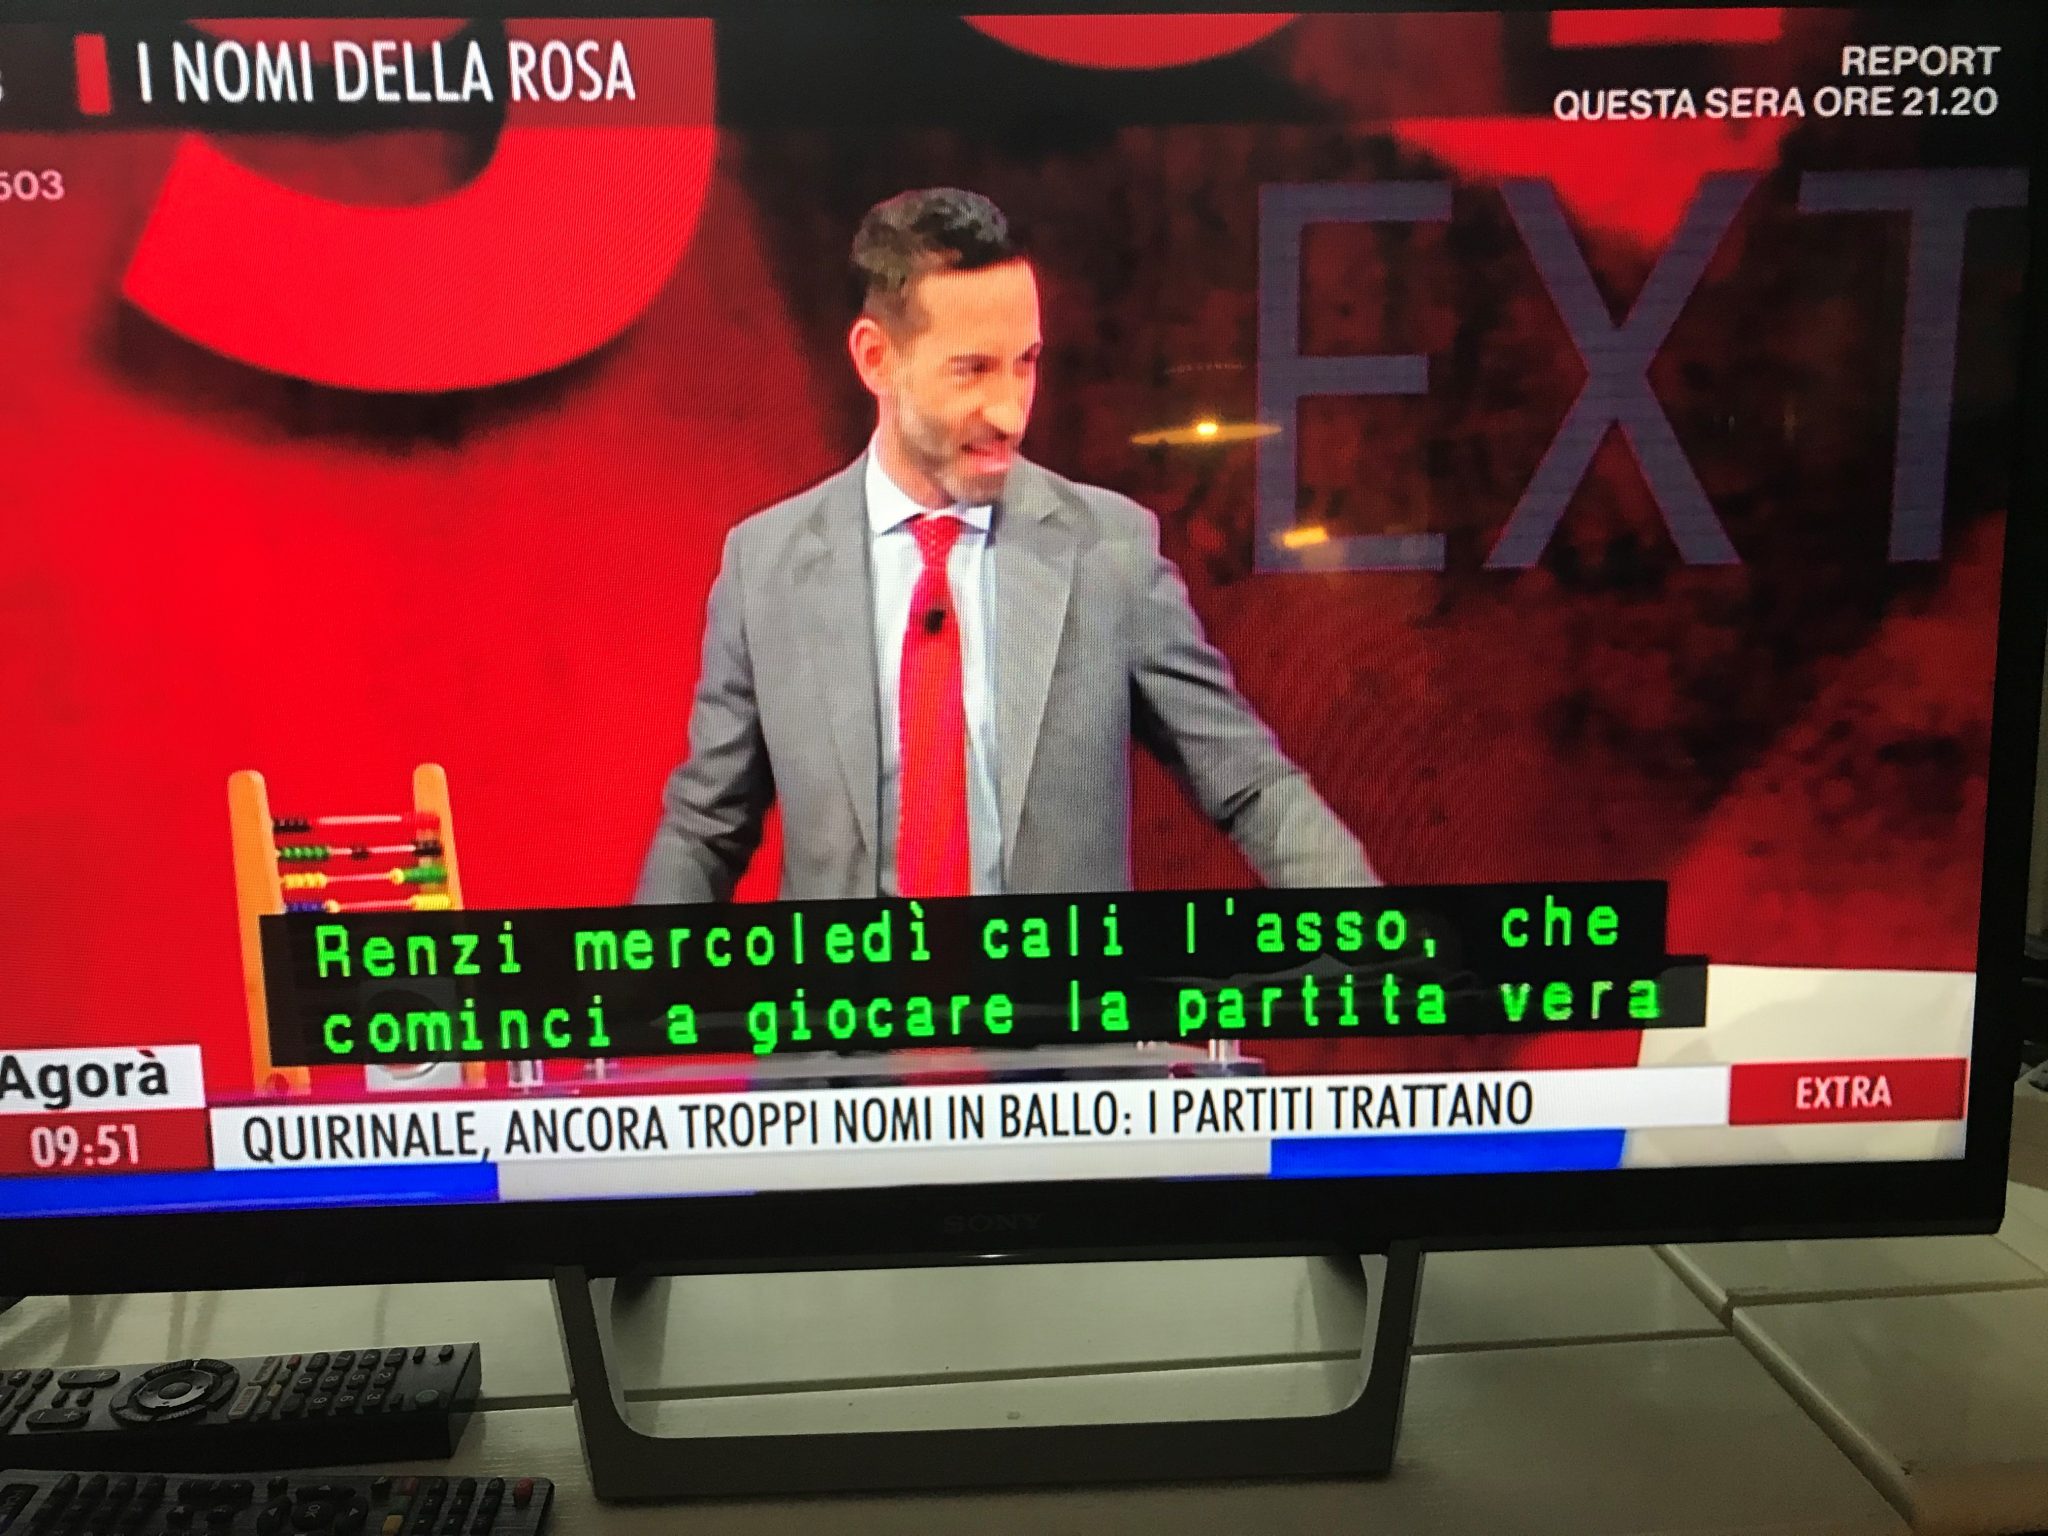 TV-ruudussa miesjuontaja, joka katsoo sivuun. Alalaidassa kaksirivinen teksti toistaa haastateltavan italiankielistä puhetta.